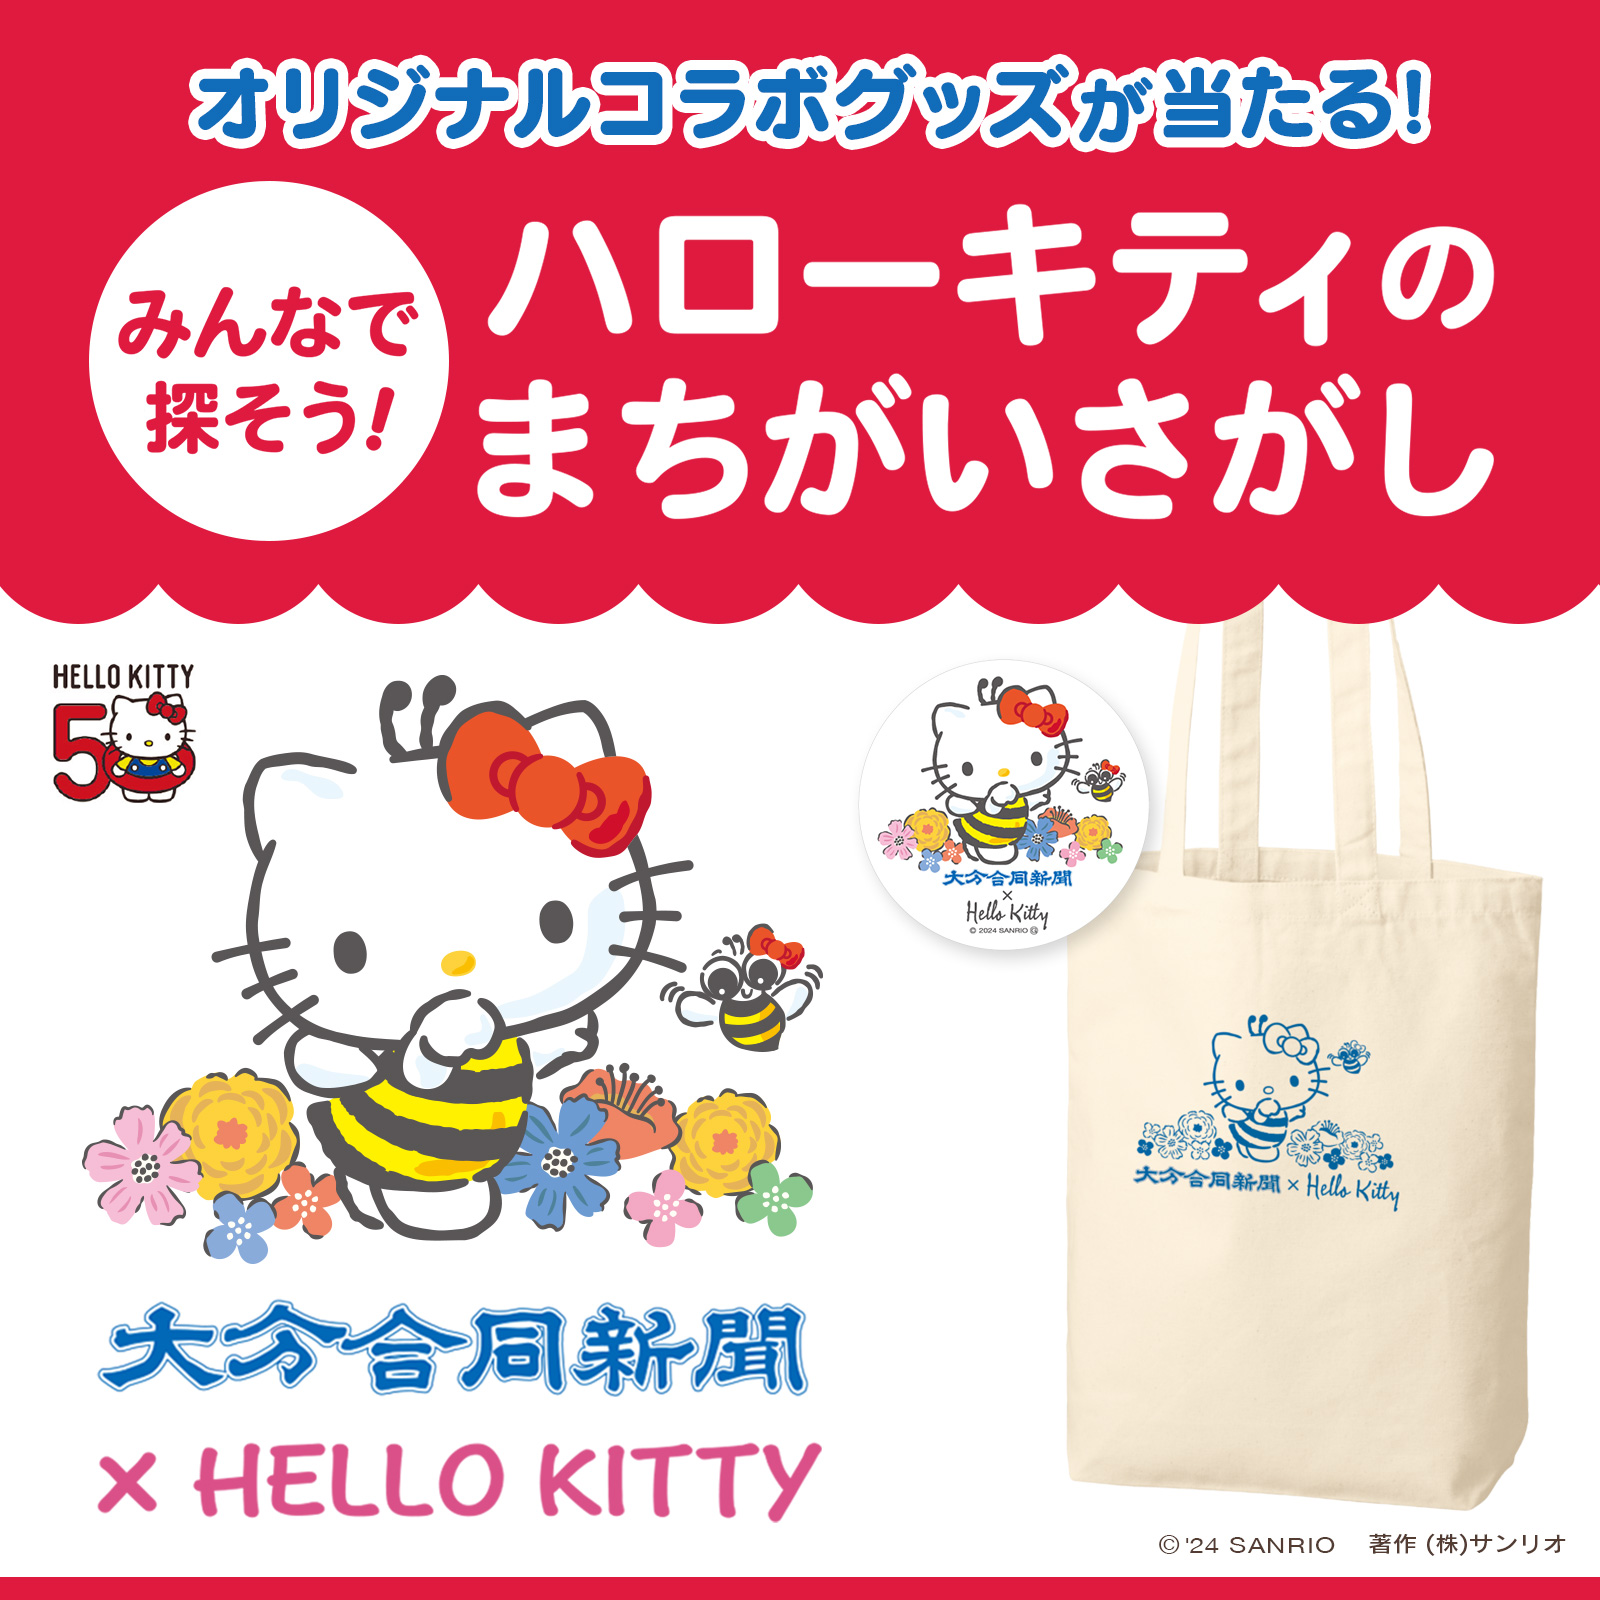 大分合同新聞社 × Hello Kitty コラボキャンペーン実施中